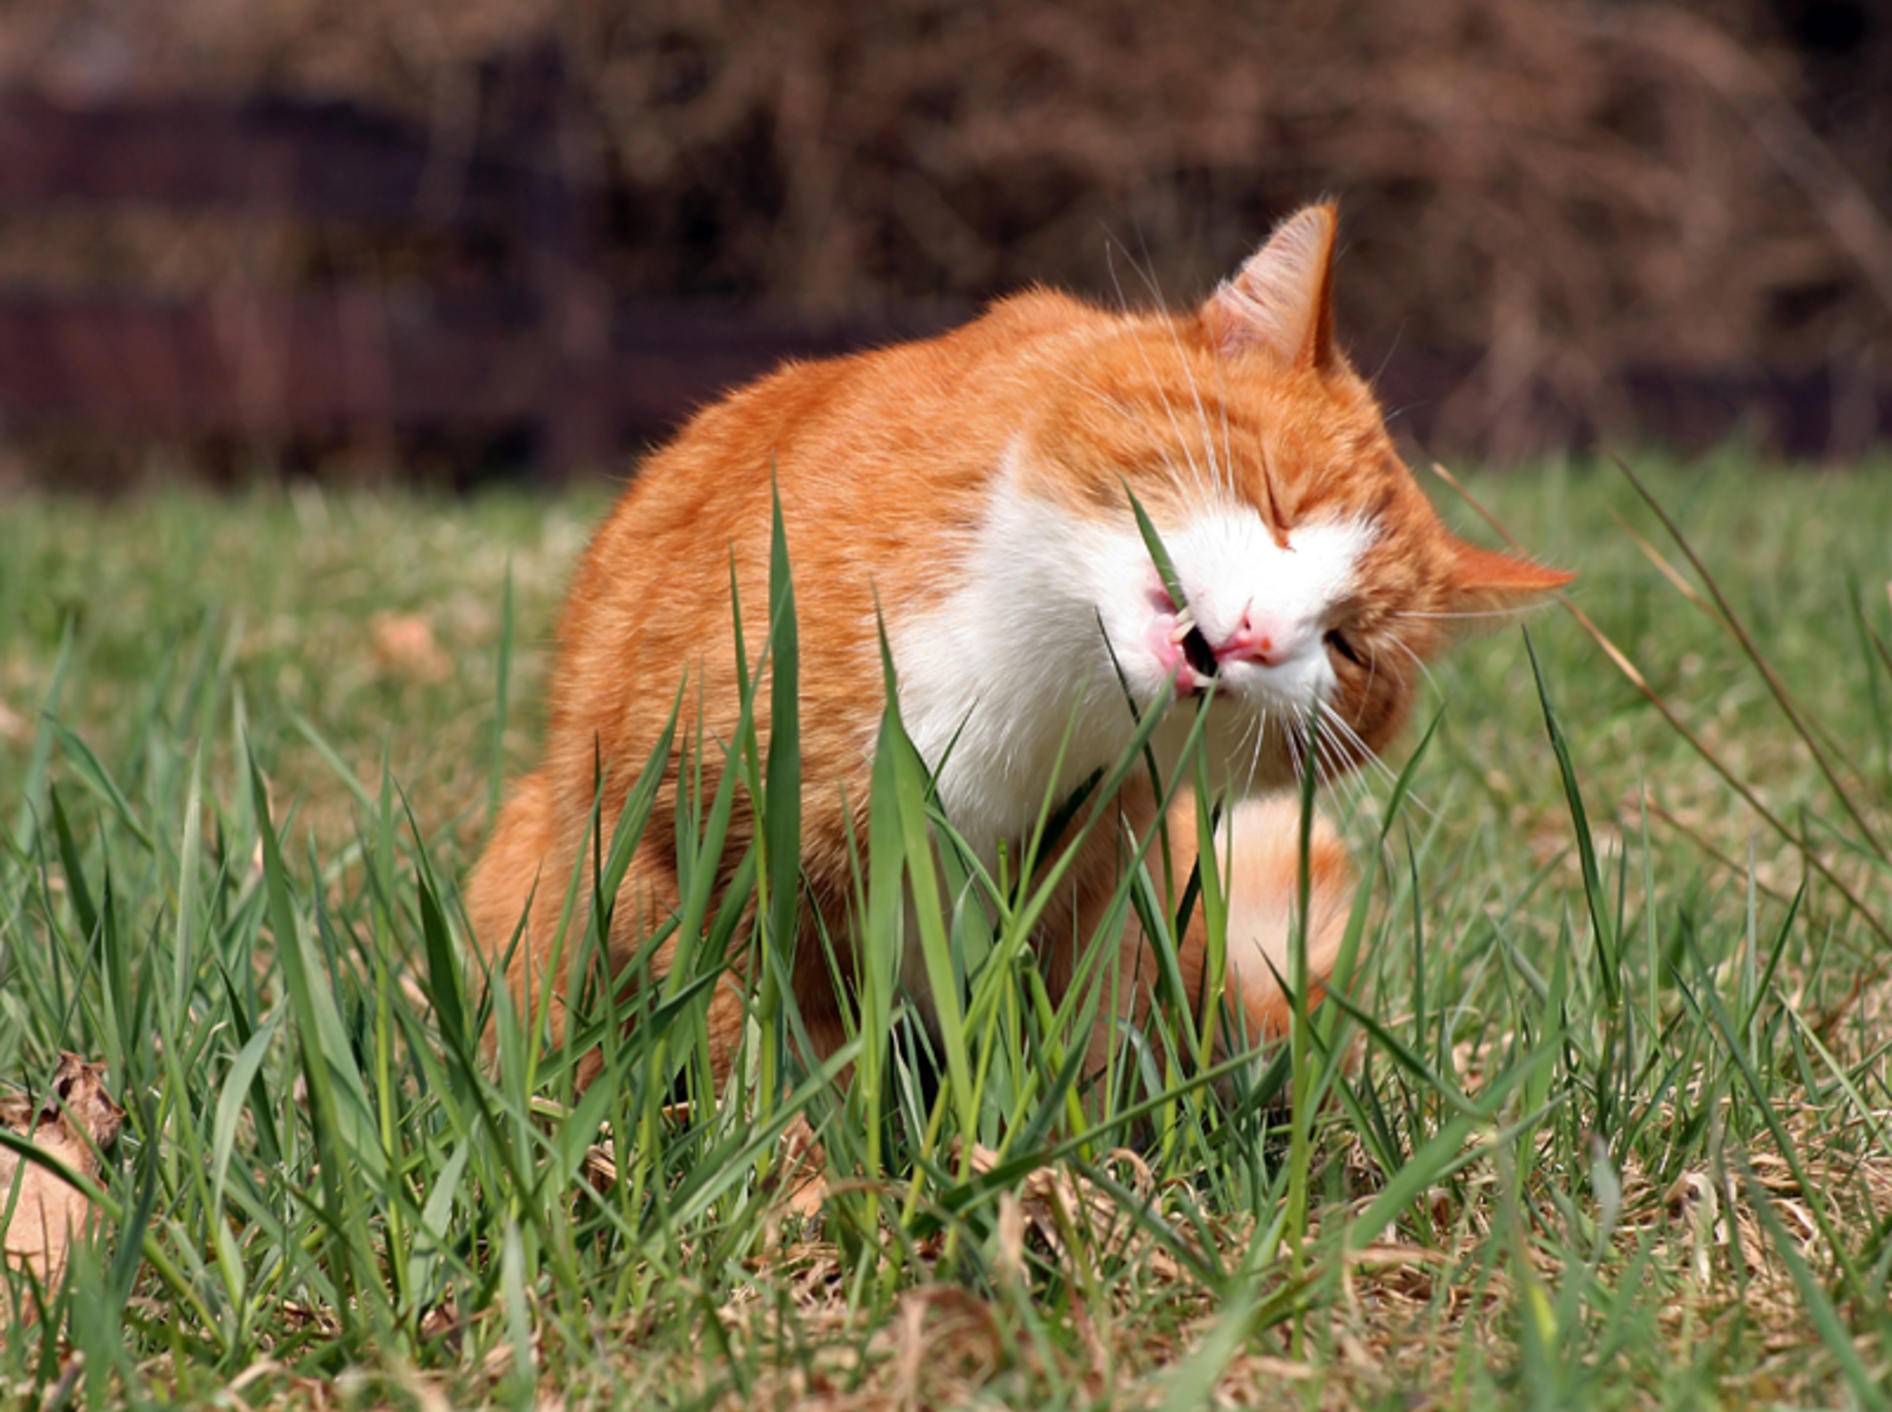 Die grünen Halme scheinen dieser Samtpfote zu schmecken, aber warum fressen Katzen Gras? – Shutterstock / Astrid Gast